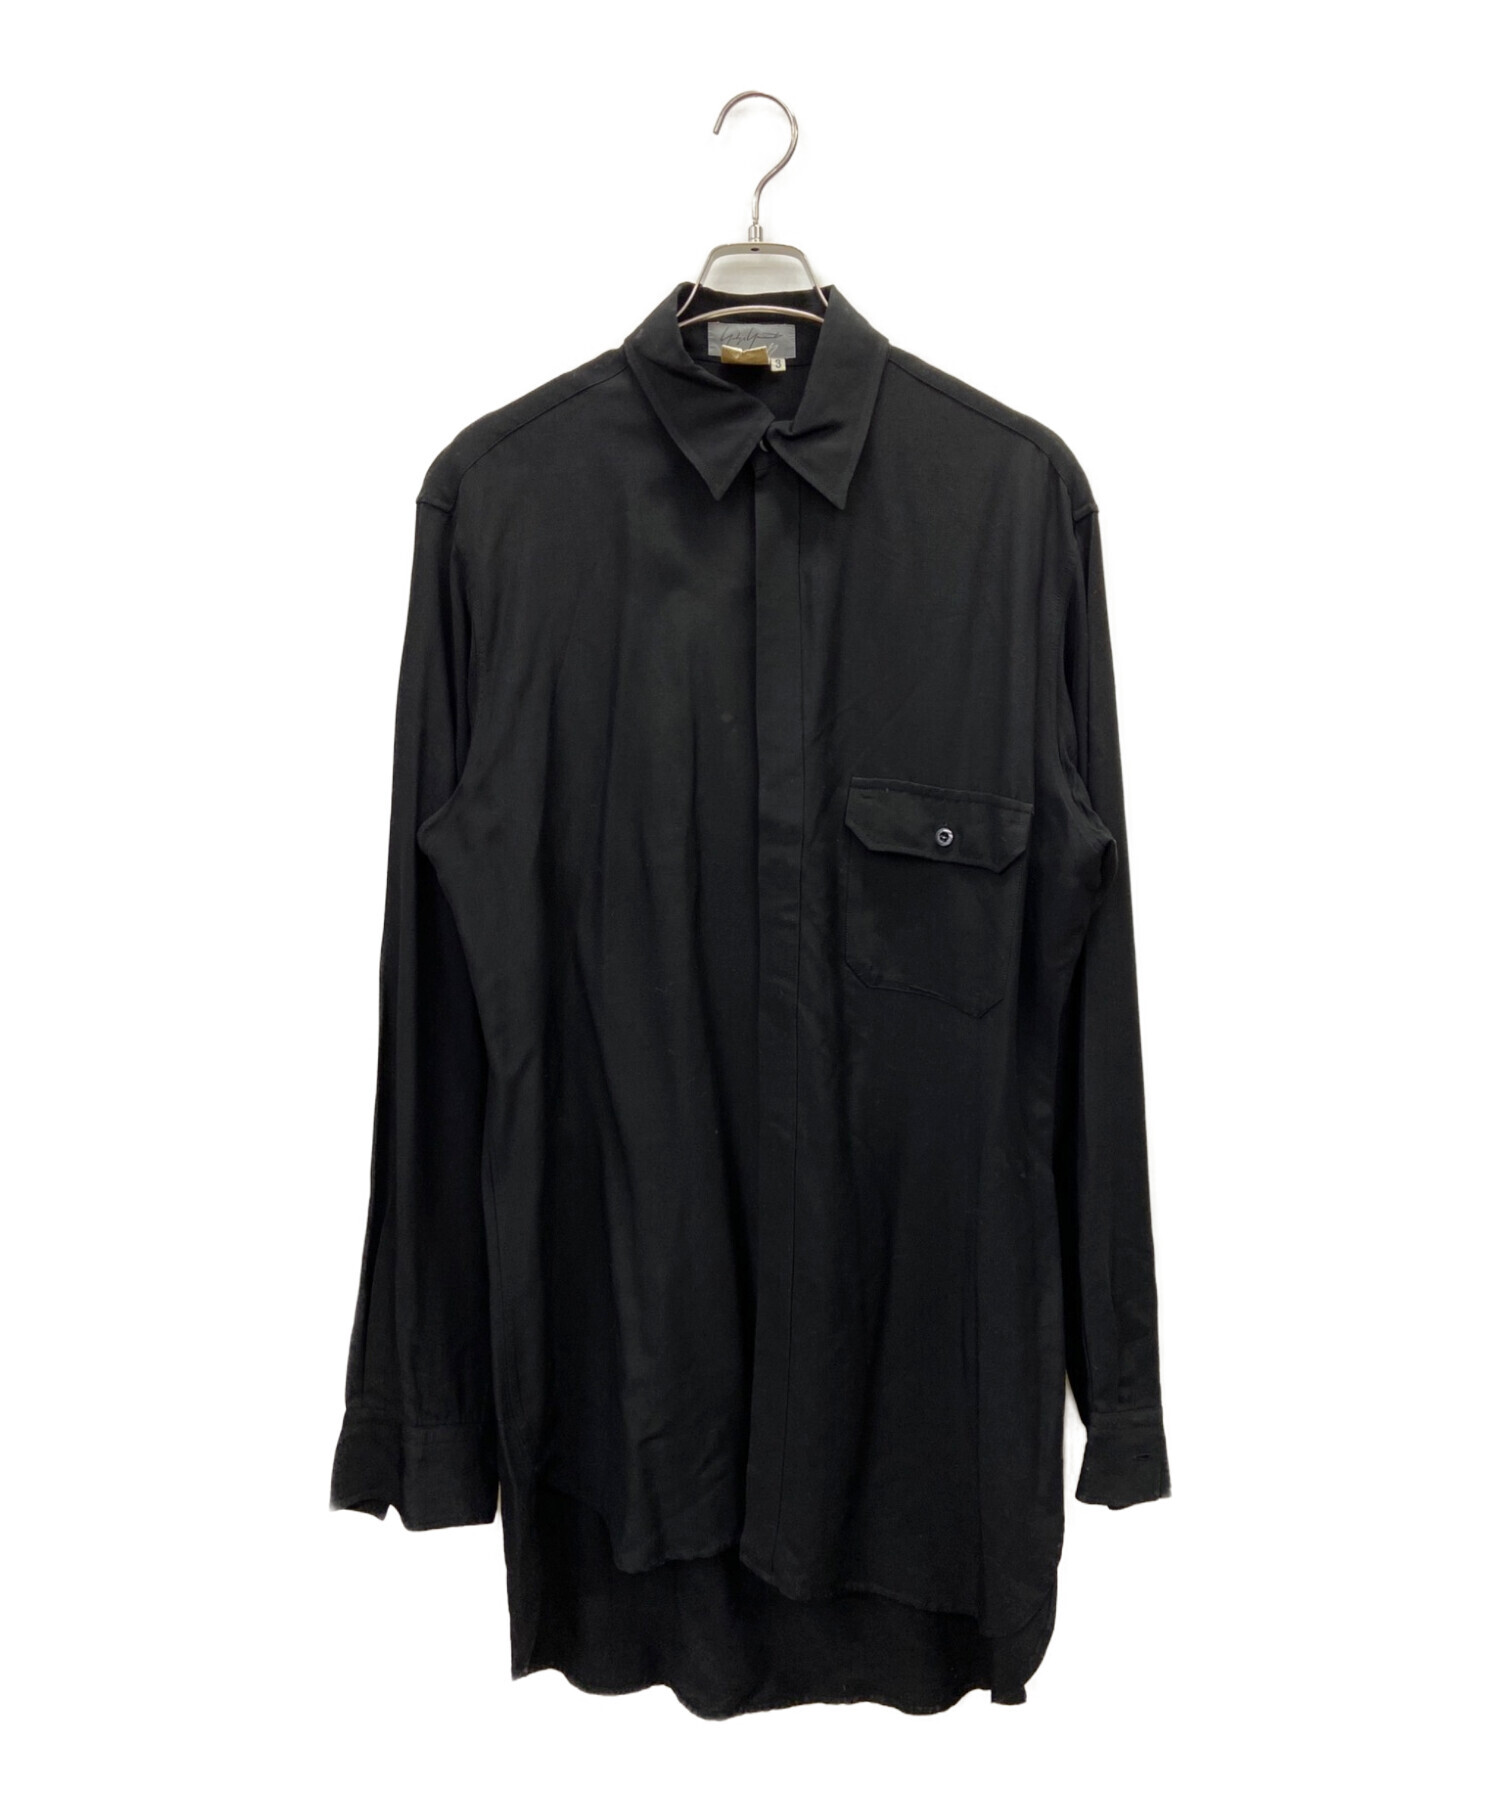 Yohji Yamamoto pour homme (ヨウジヤマモト プールオム) オーバーサイズシャツ ブラック サイズ:3